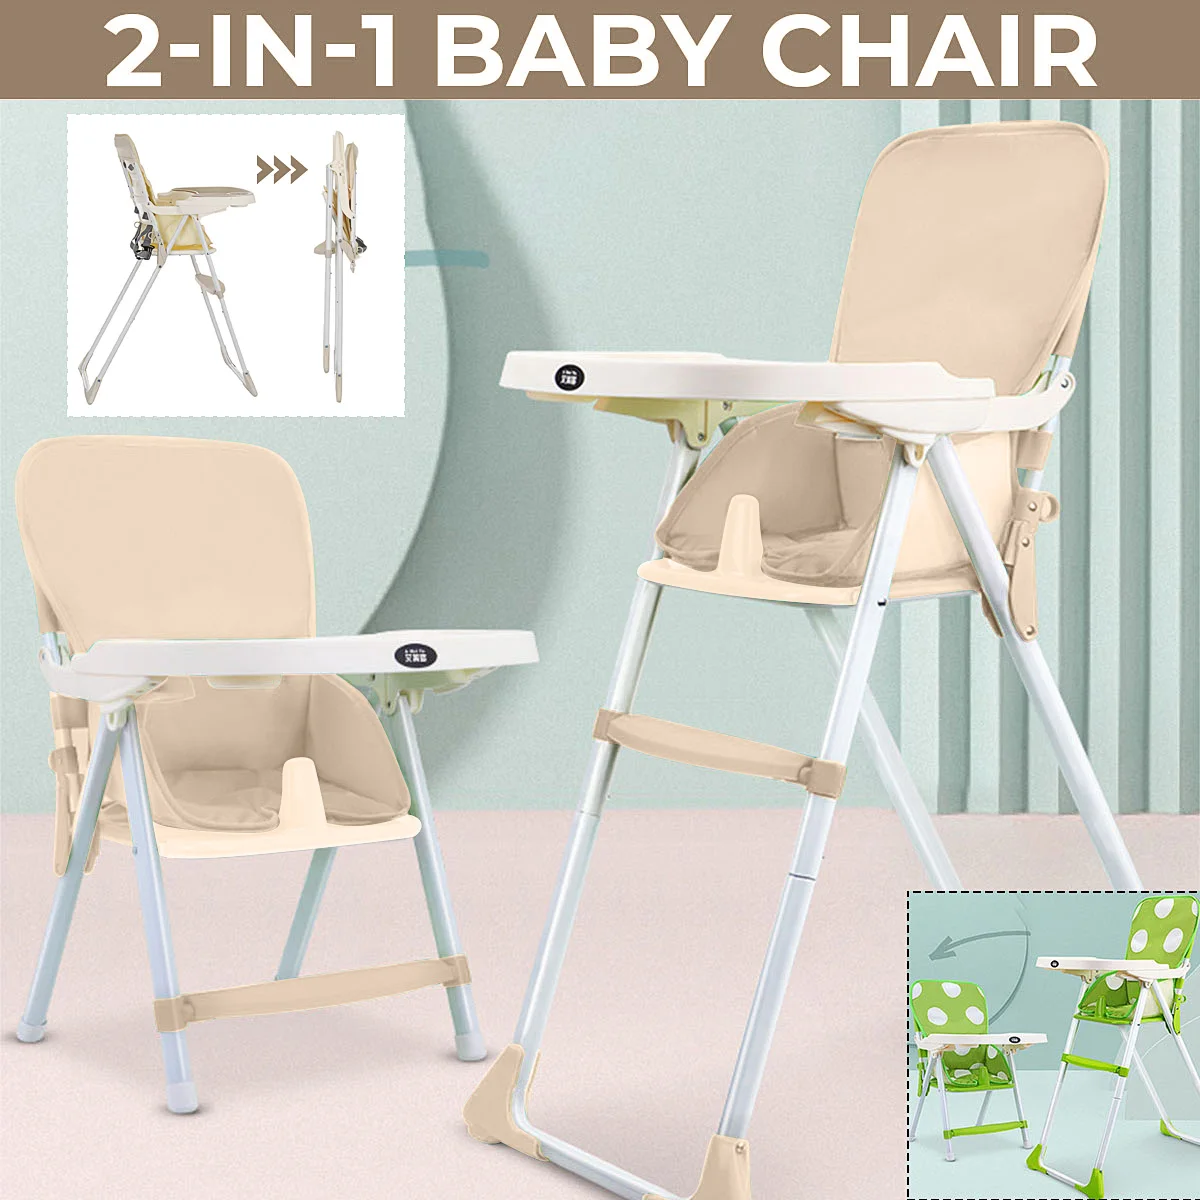 

Детский высокий стул с 3 уровнями регулируемых ножек портативный складной поднос для кормления малышей